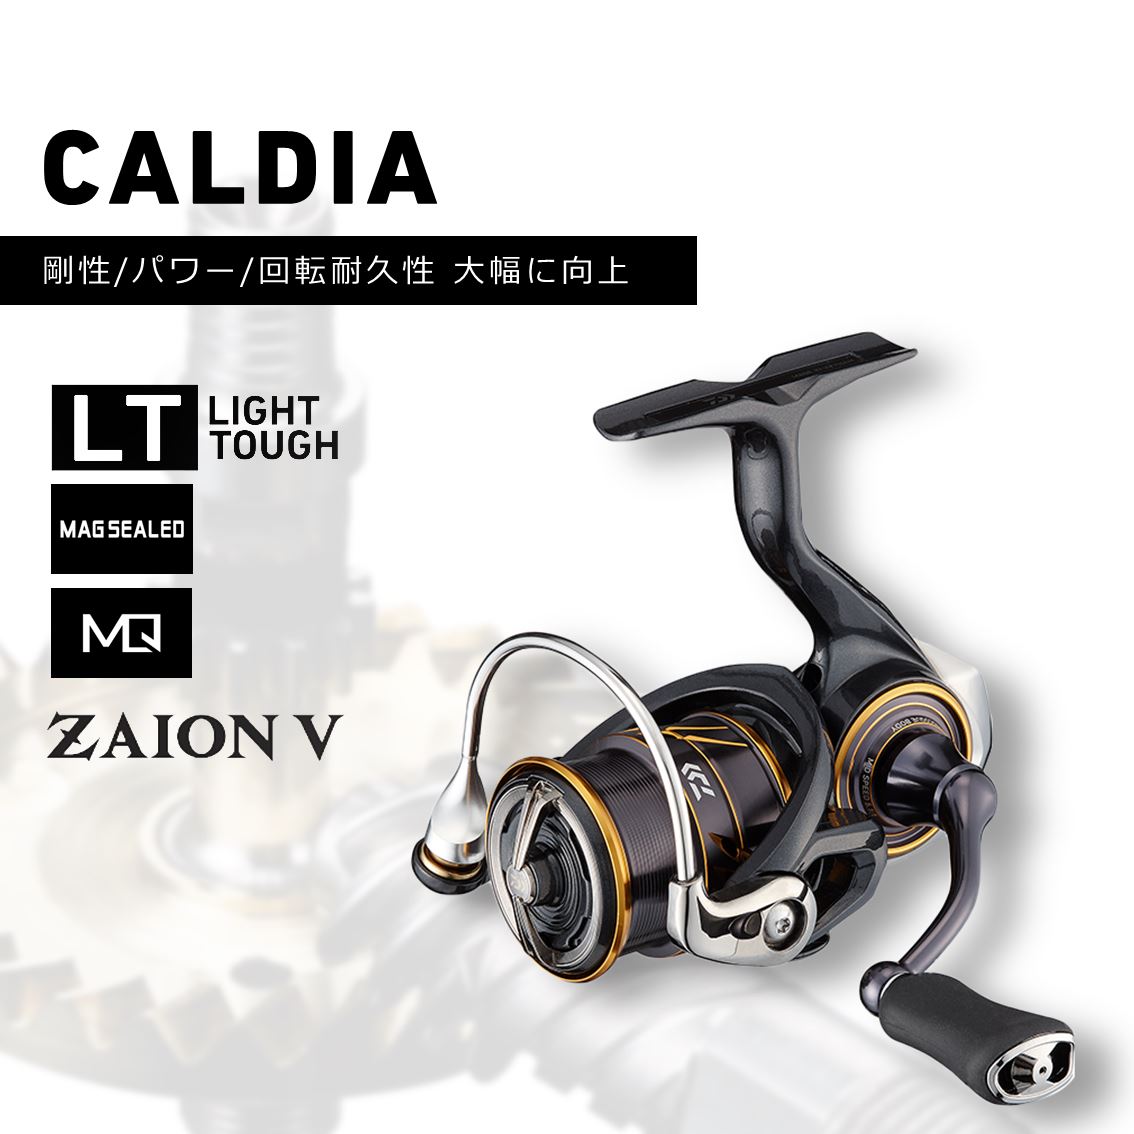 ダイワ カルディア CALDIA LT 4000S-C